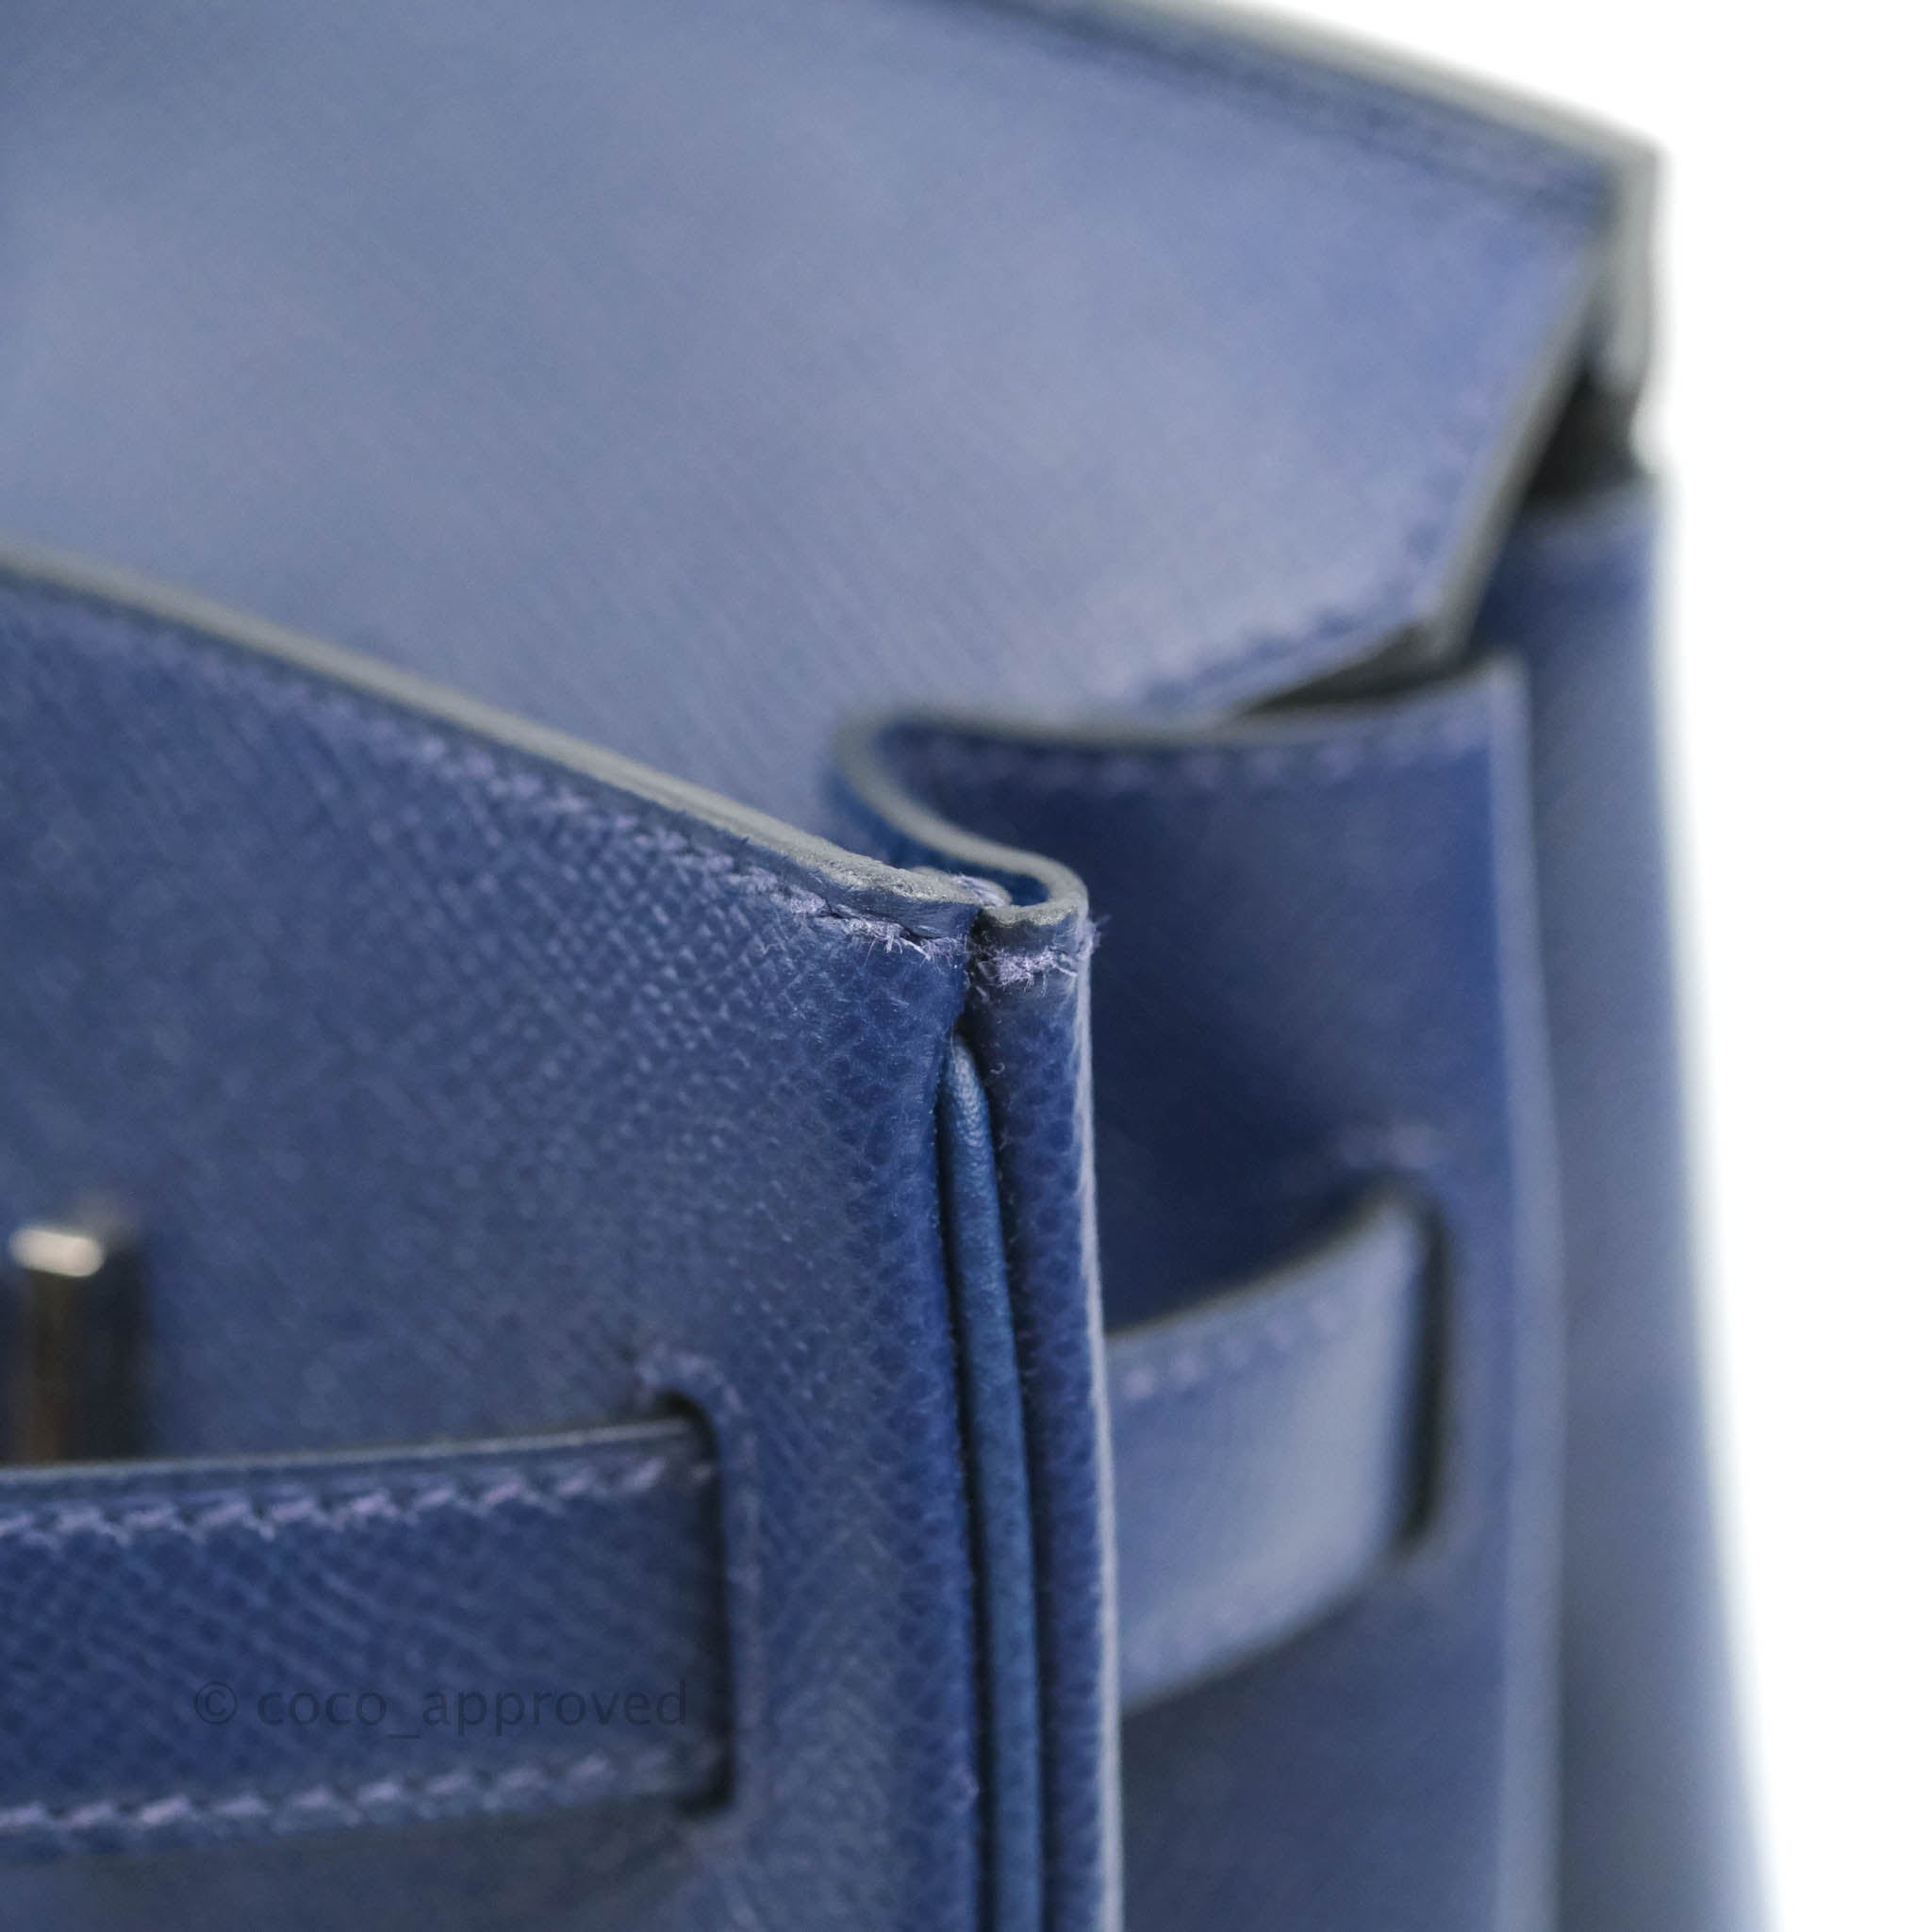 Hermès Blue Sapphire Box Birkin Bag